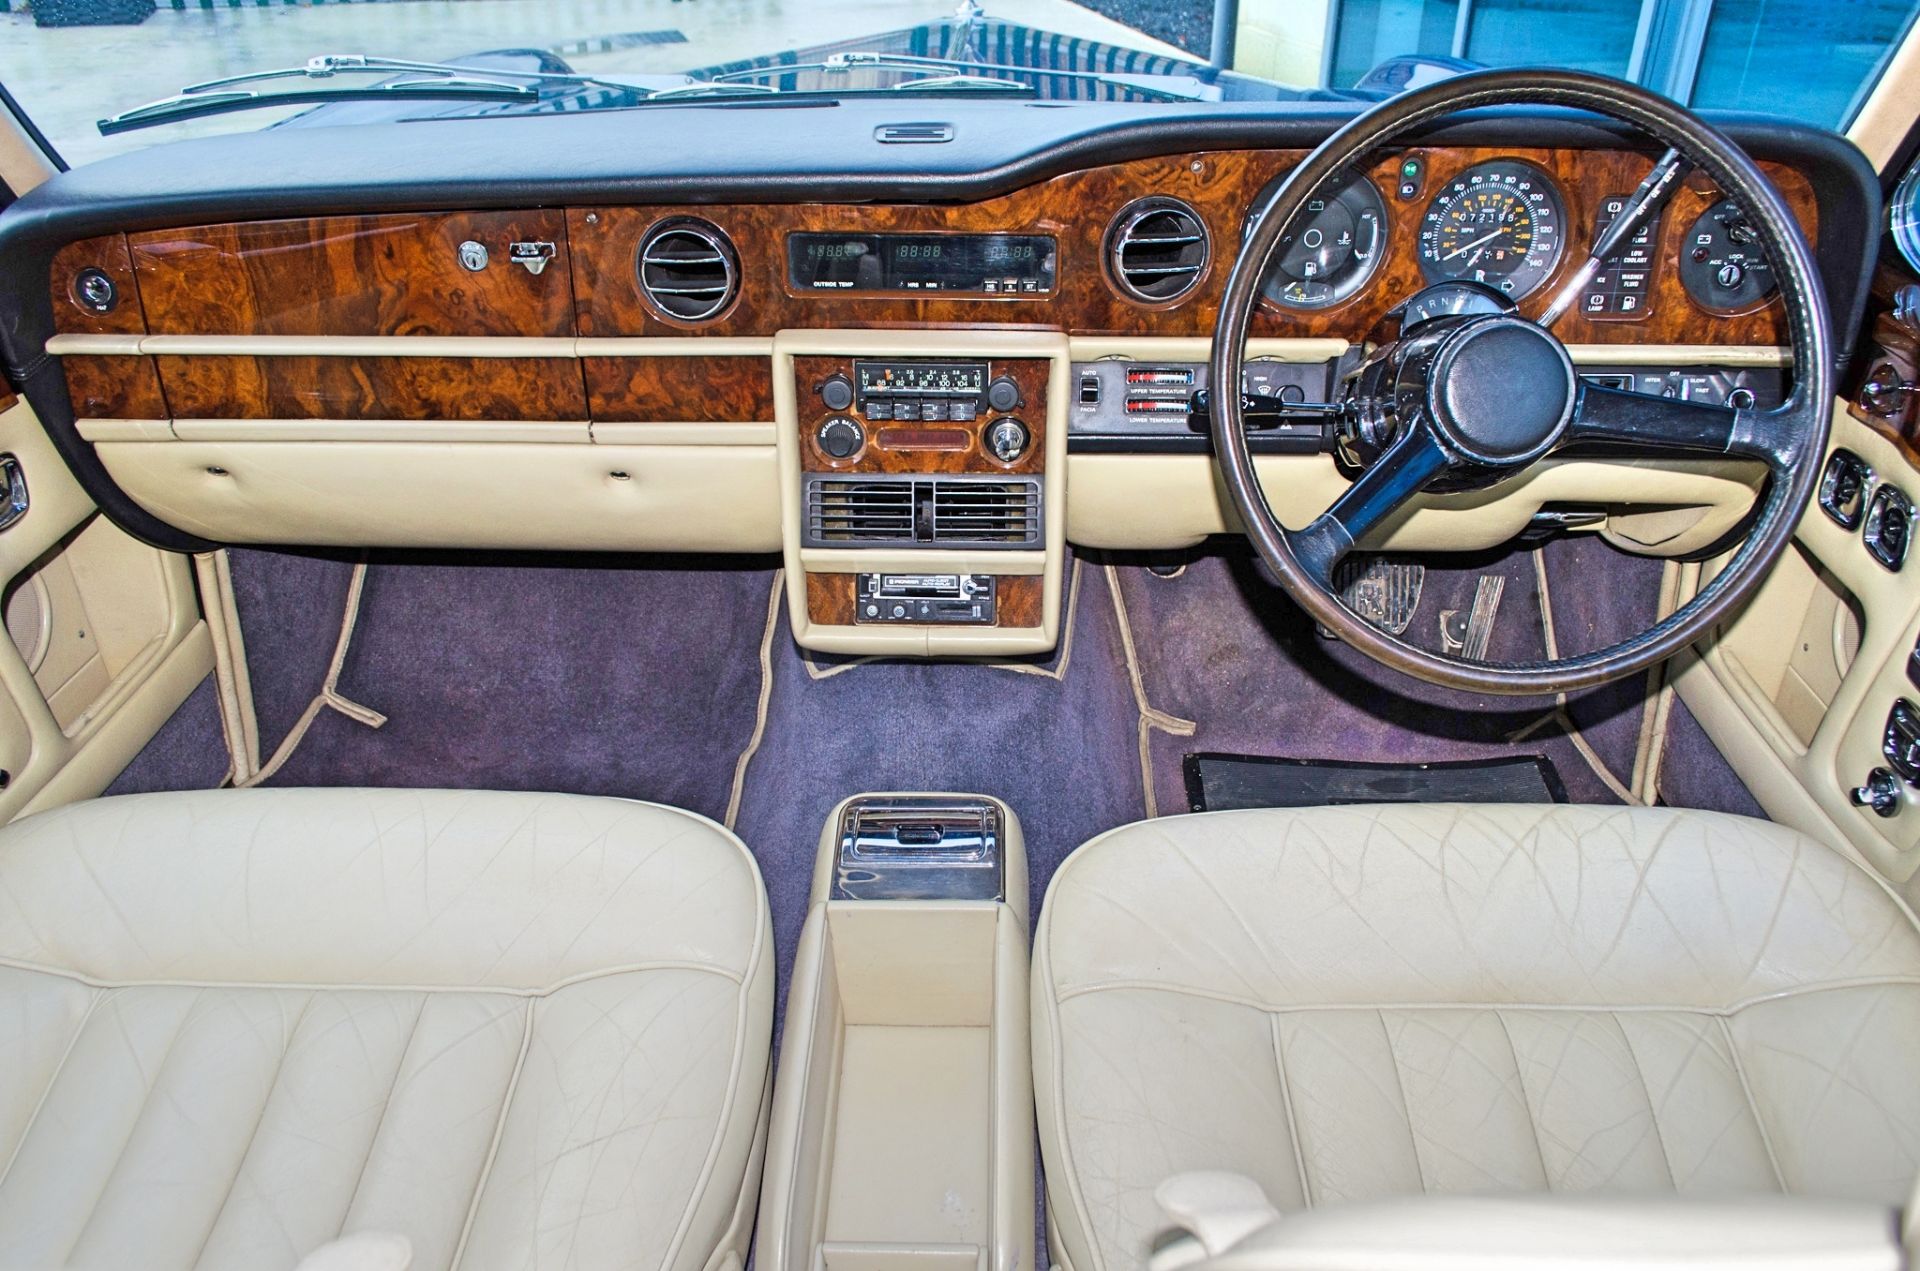 1981 Rolls-Royce Corniche 6.75 litre Series 5000 3 door fixed head coupe - Image 33 of 50